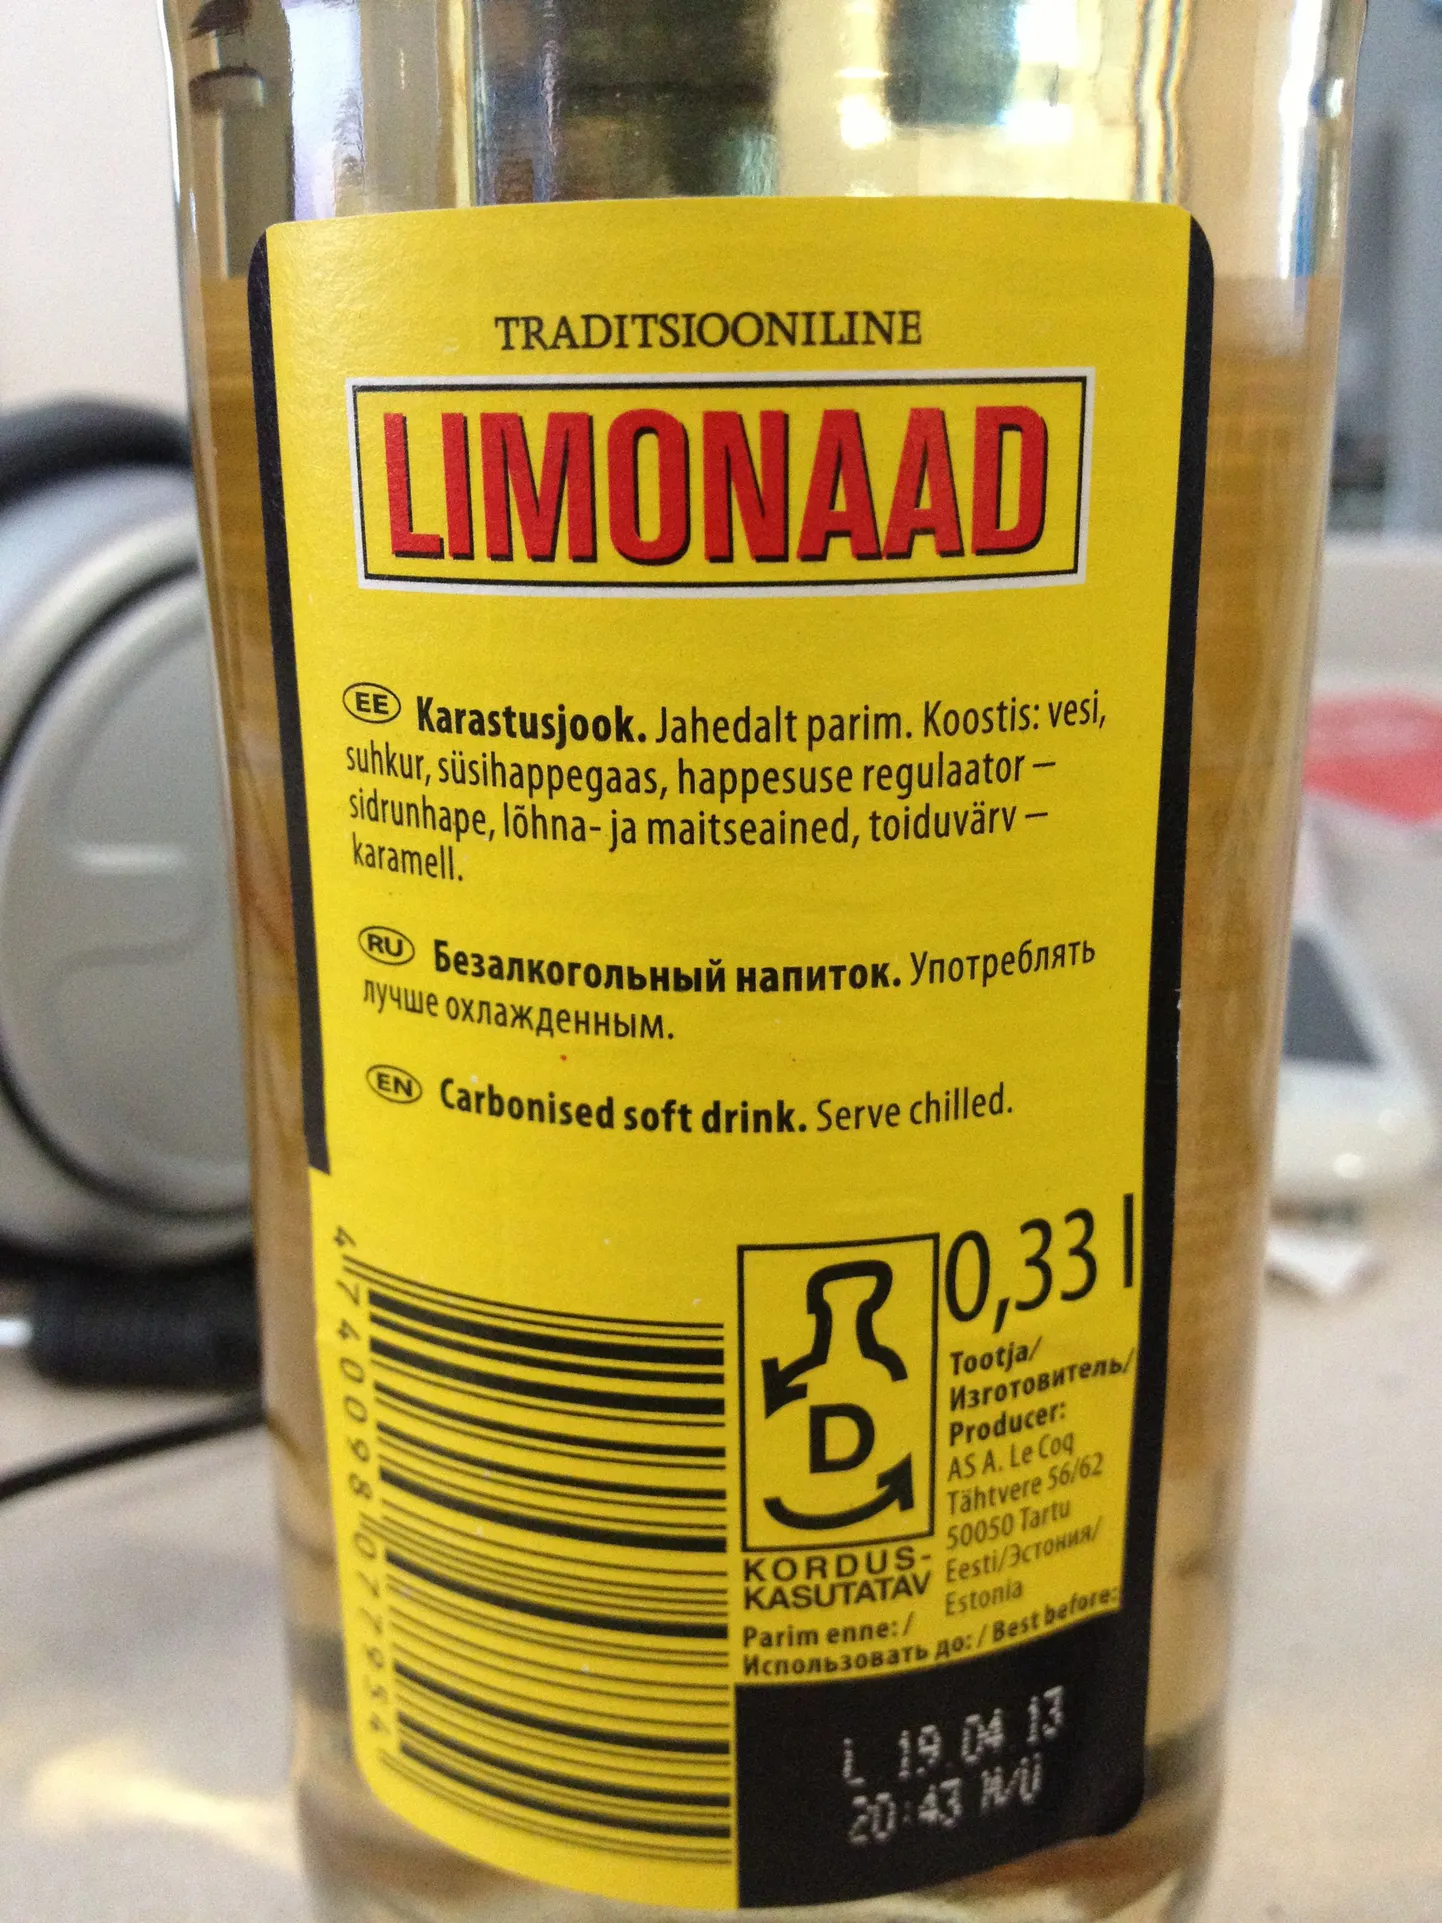 Traditsioonilise Limonaadi etikett.